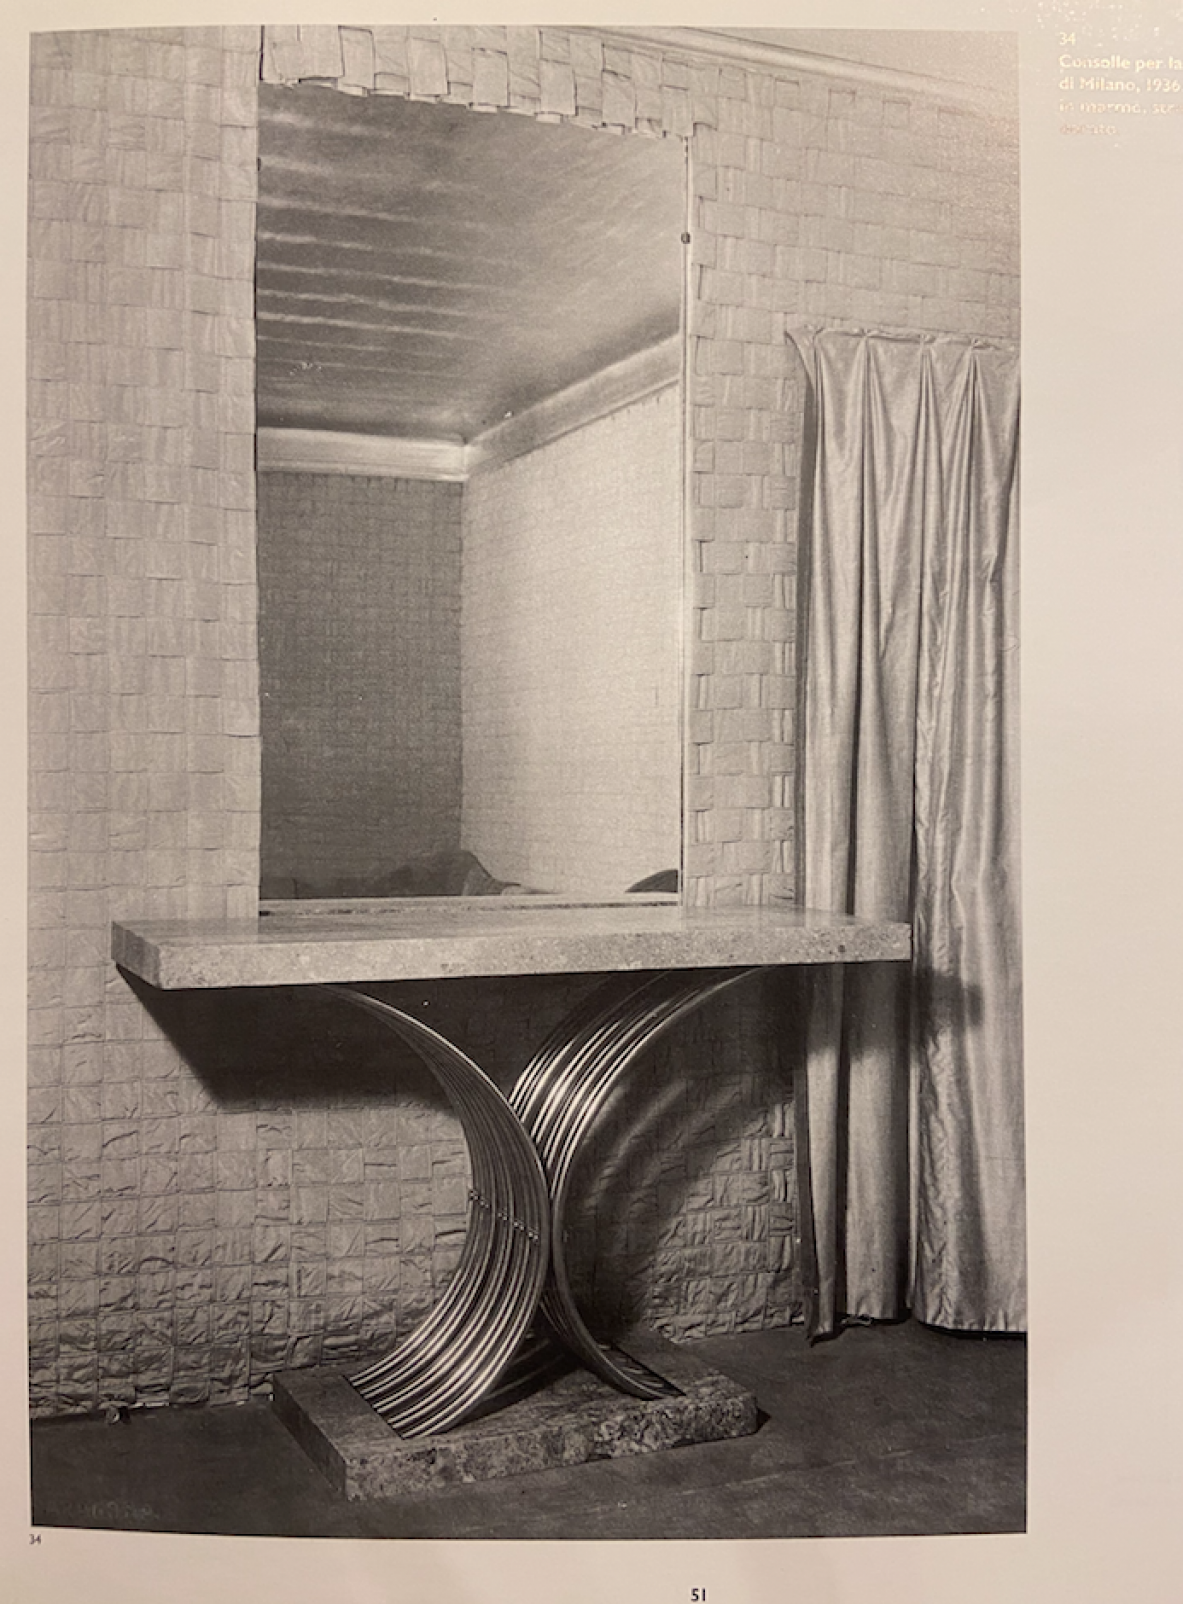 Guglielmo Ulrich, console in legno ebanizzato con grande specchiera incisa, 1936.